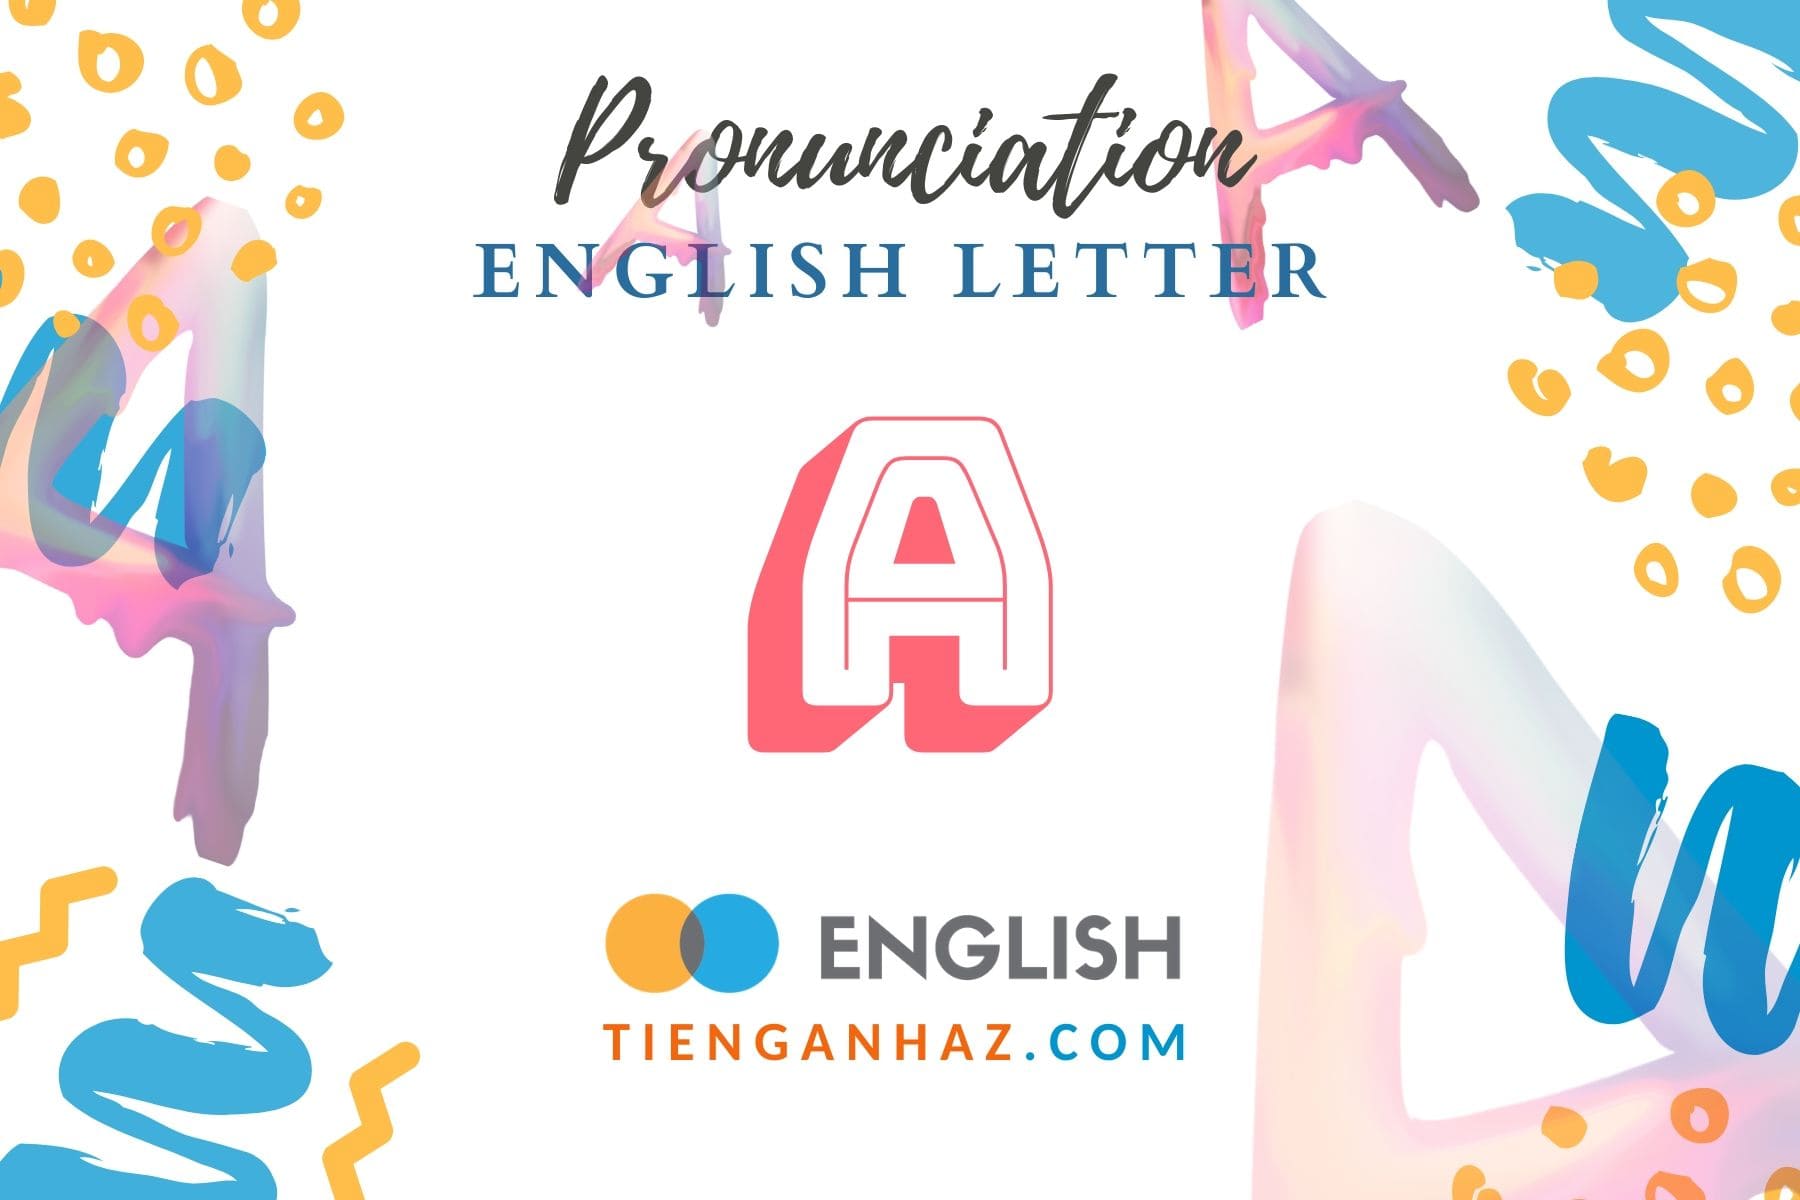 Pronunciation | English letter A: Thành thạo 9 cách phát âm chữ A - Tieng Anh AZ